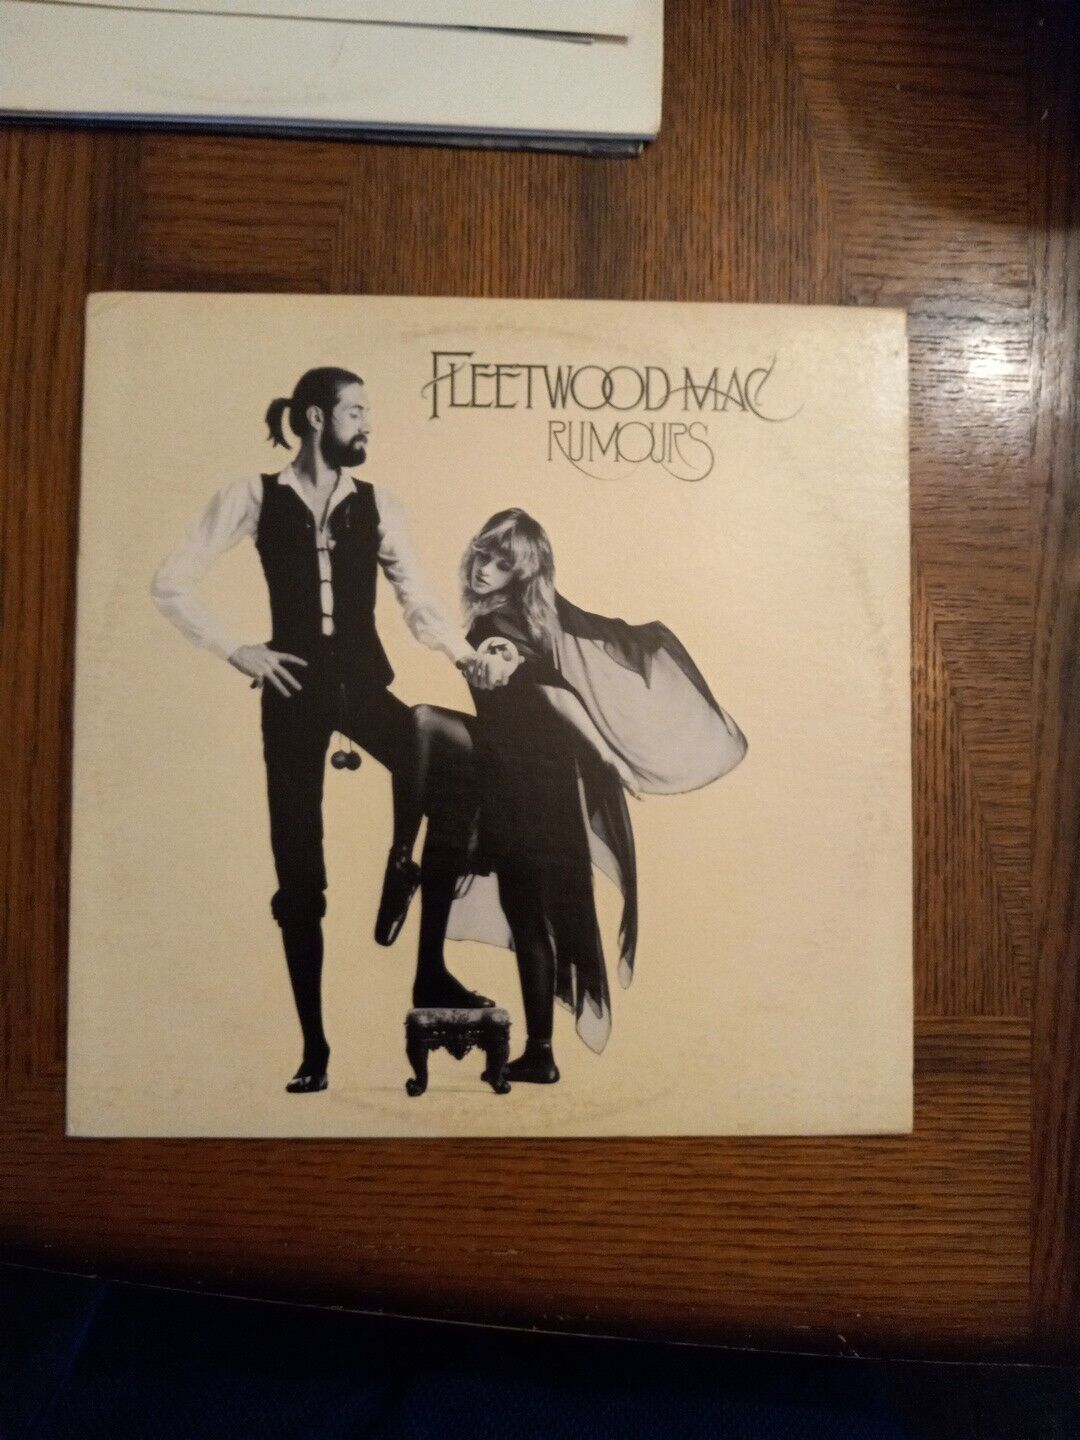 Fleetwood Mac - Rumours LP 1977 Warner Bros BSK 3010 - in Great Shape VG+